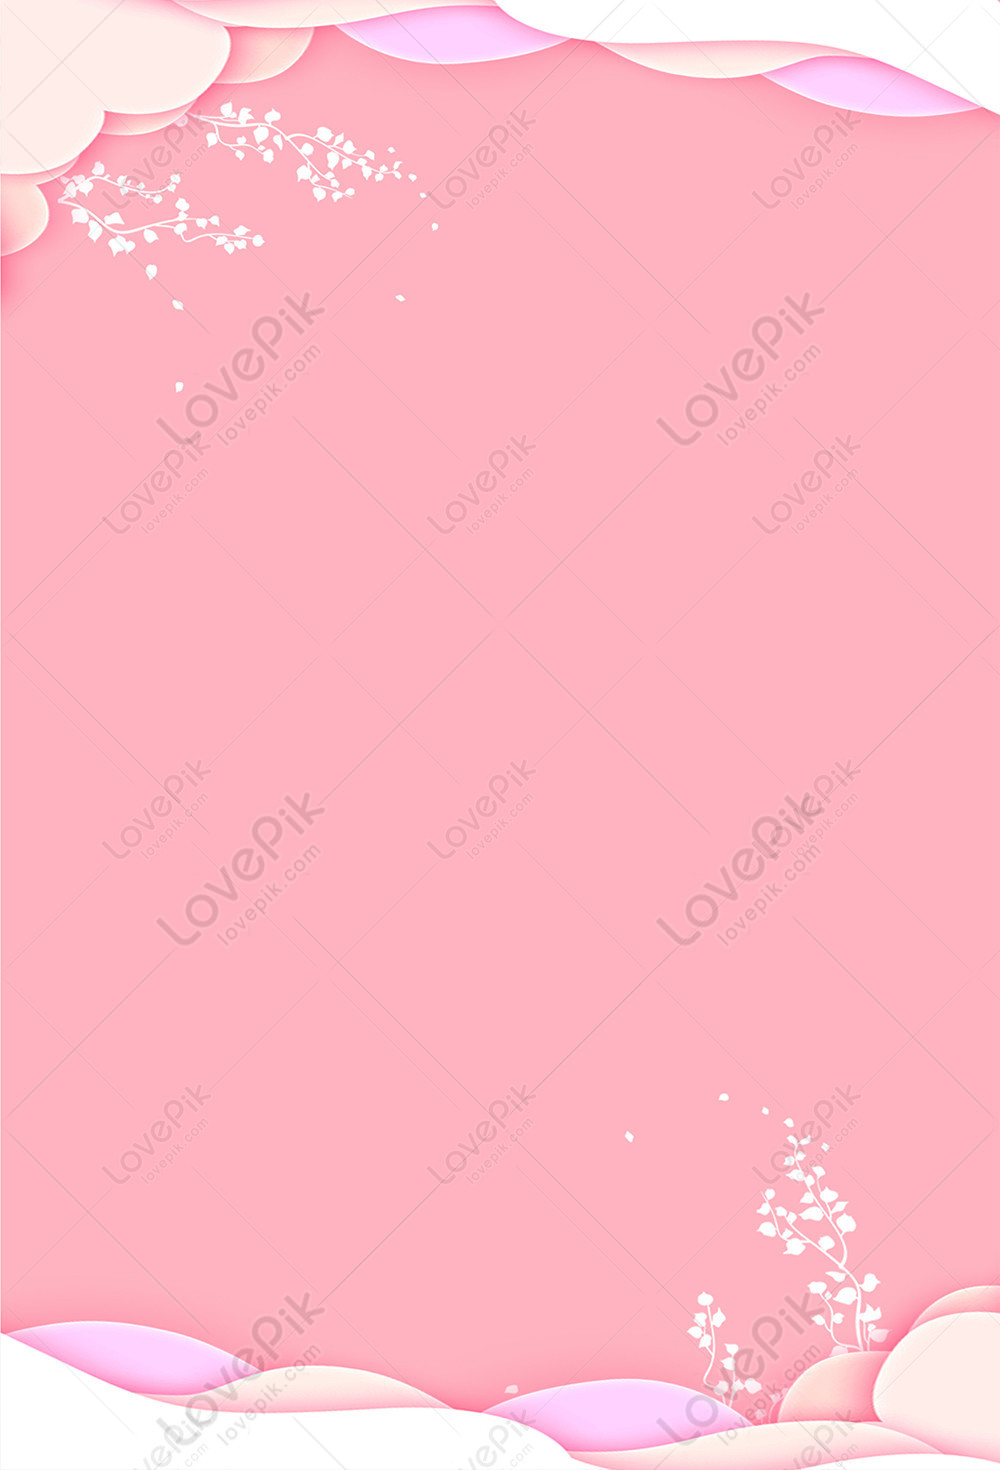 Nền poster màu hồng là một trong những lựa chọn yêu thích để trang trí phòng ngủ, phòng làm việc hay phòng khách. Với giá trị thẩm mỹ cao và màu sắc nổi bật, nó sẽ giúp cho không gian trở nên ngọt ngào và đáng yêu tới vô cùng. Hãy cùng khám phá những poster màu hồng đẹp để tạo nên một không gian nữ tính và dễ thương.